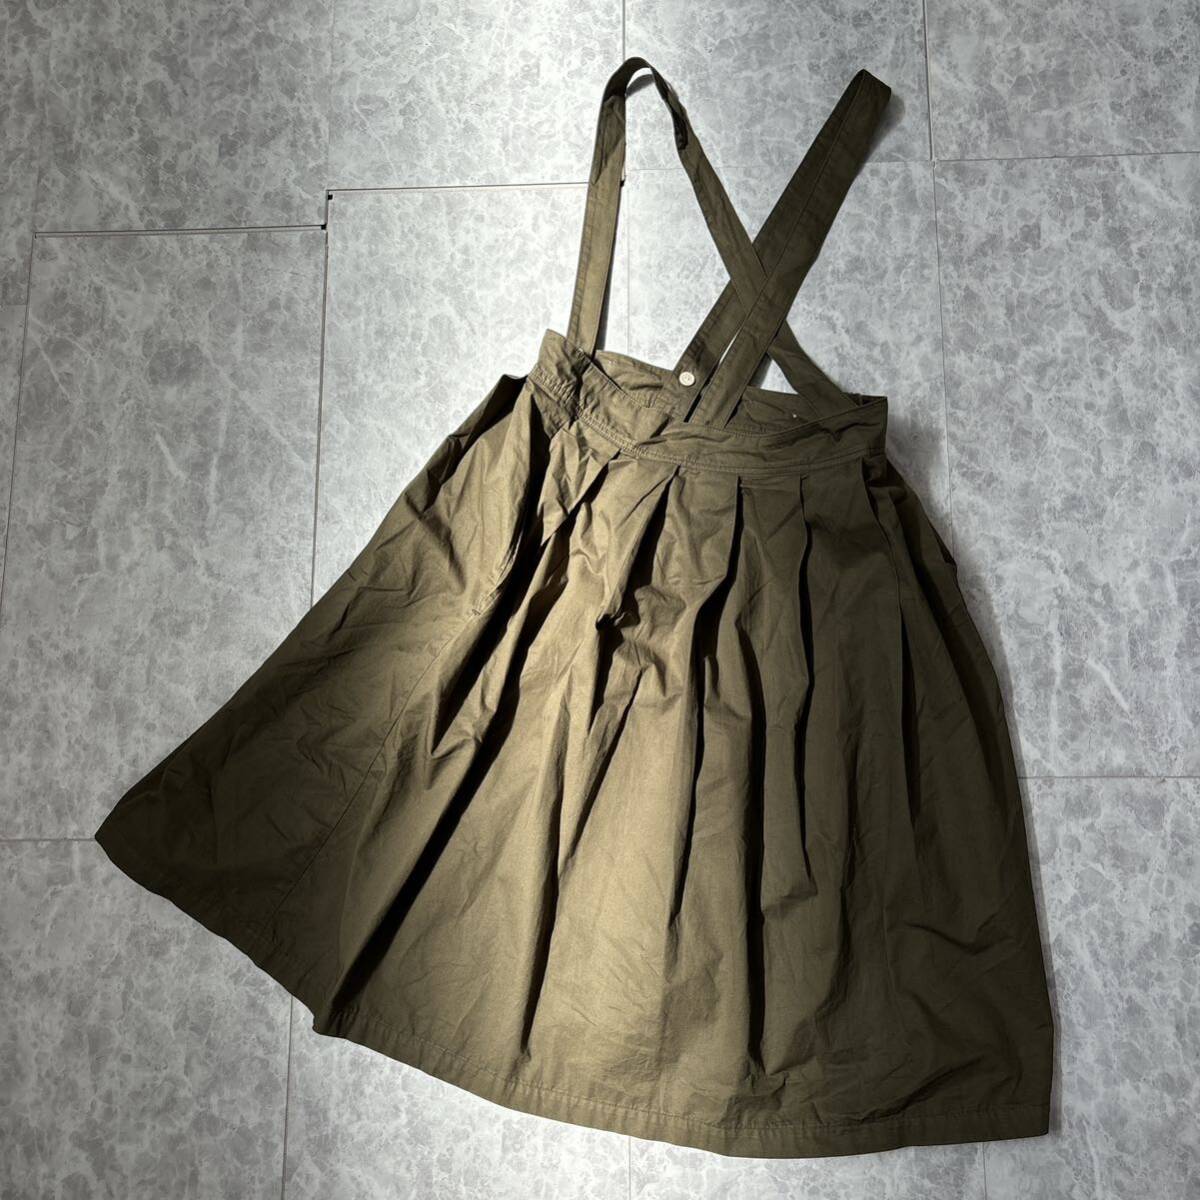 CC ＊ 良品 日本製 '人気モデル' MARKEY'S A BOND マーキーズ 上質コットン素材 サロペット スカート size1 レディース 婦人服 ボトムス_画像2